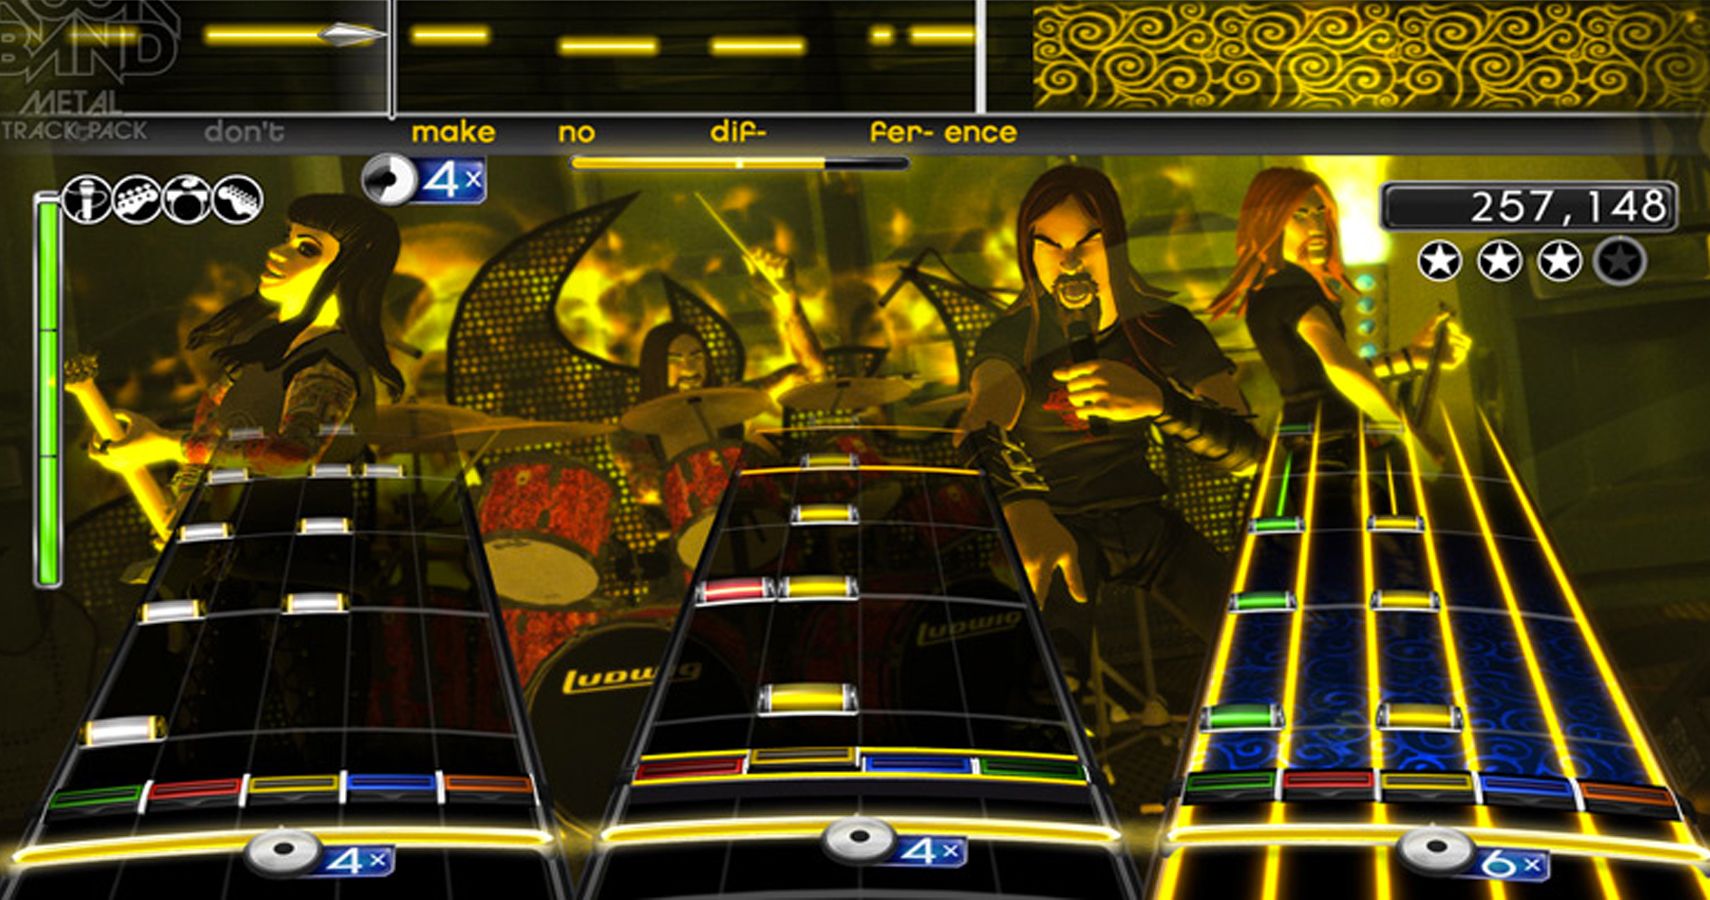 Rock Band 2, Inside A Gameplay Match